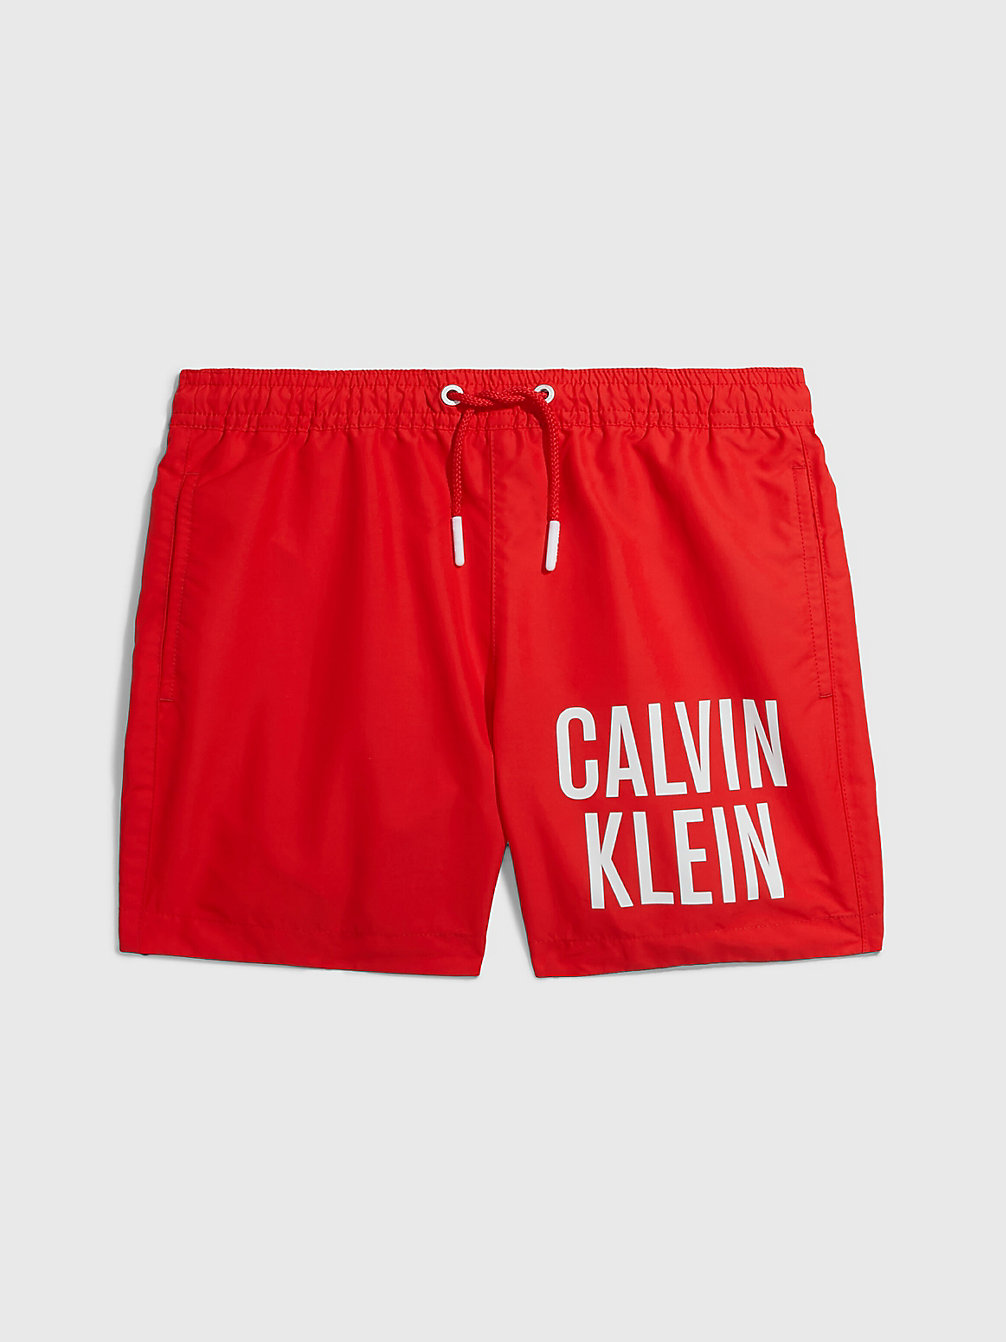 CAJUN RED > Zwemboxer Voor Jongens - Intense Power > undefined boys - Calvin Klein